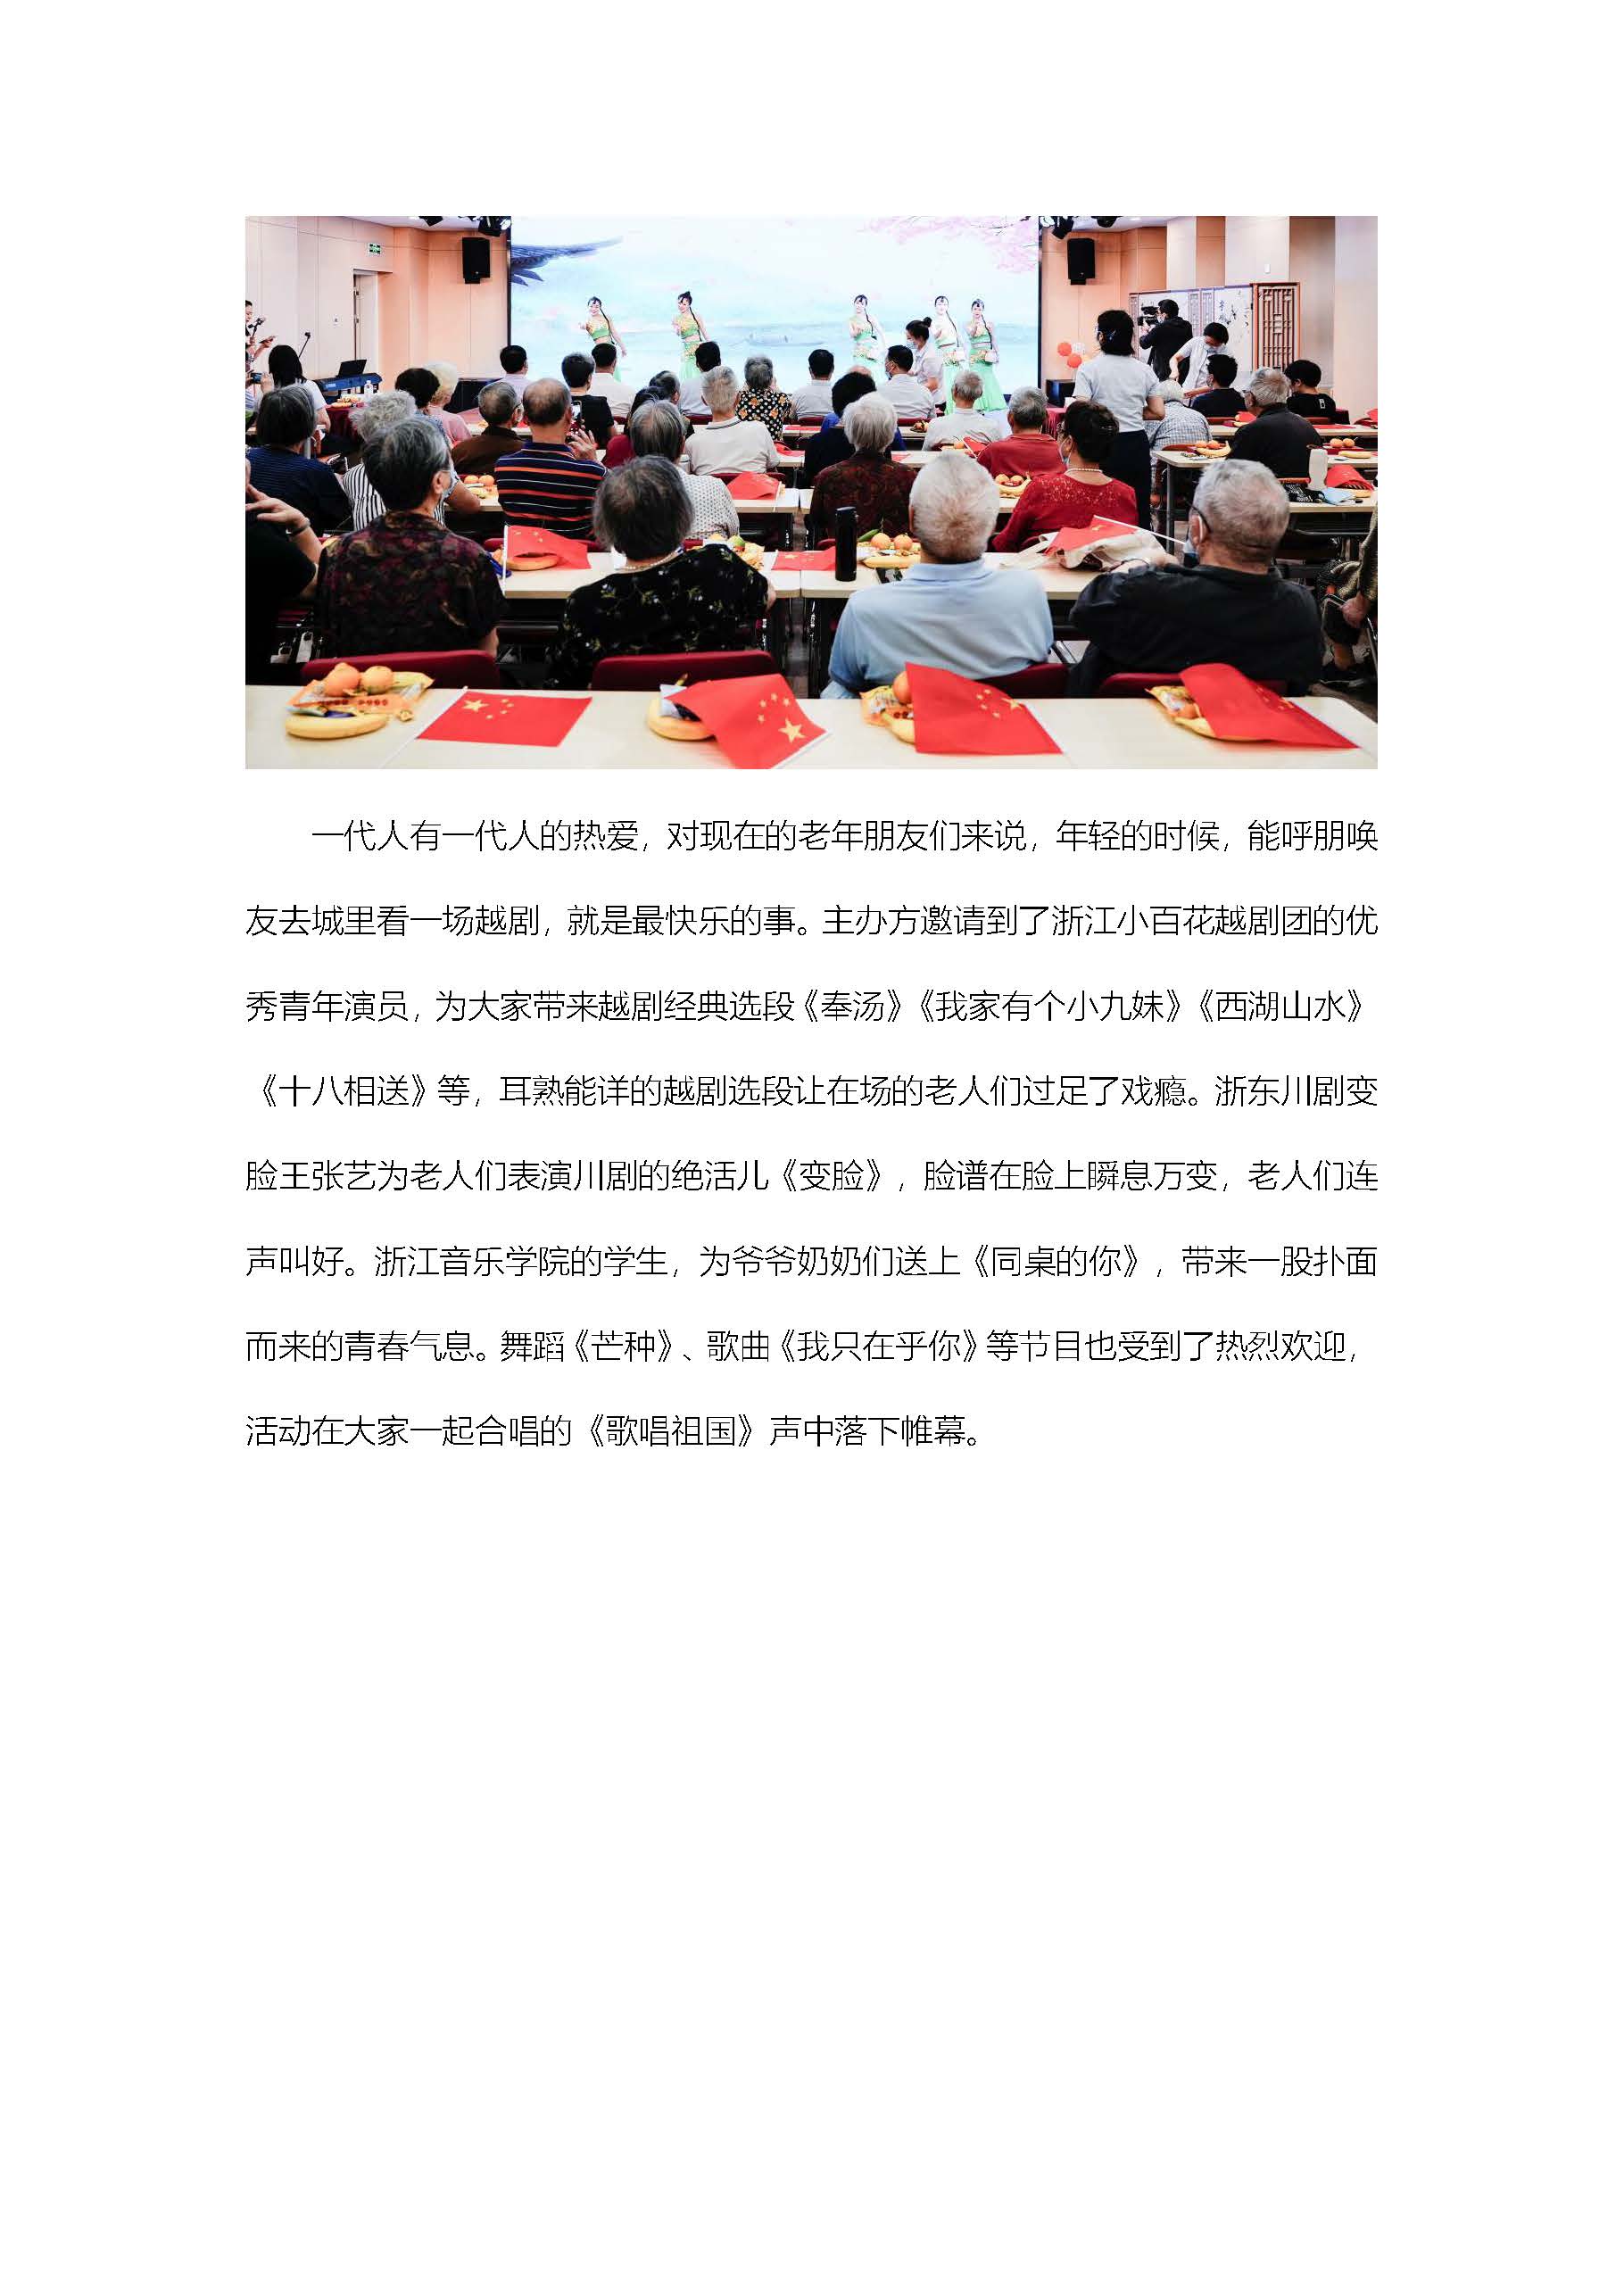 幸福頤養愛在重陽—福彩暖萬家活動走進杭州市社會福利中心2.jpg